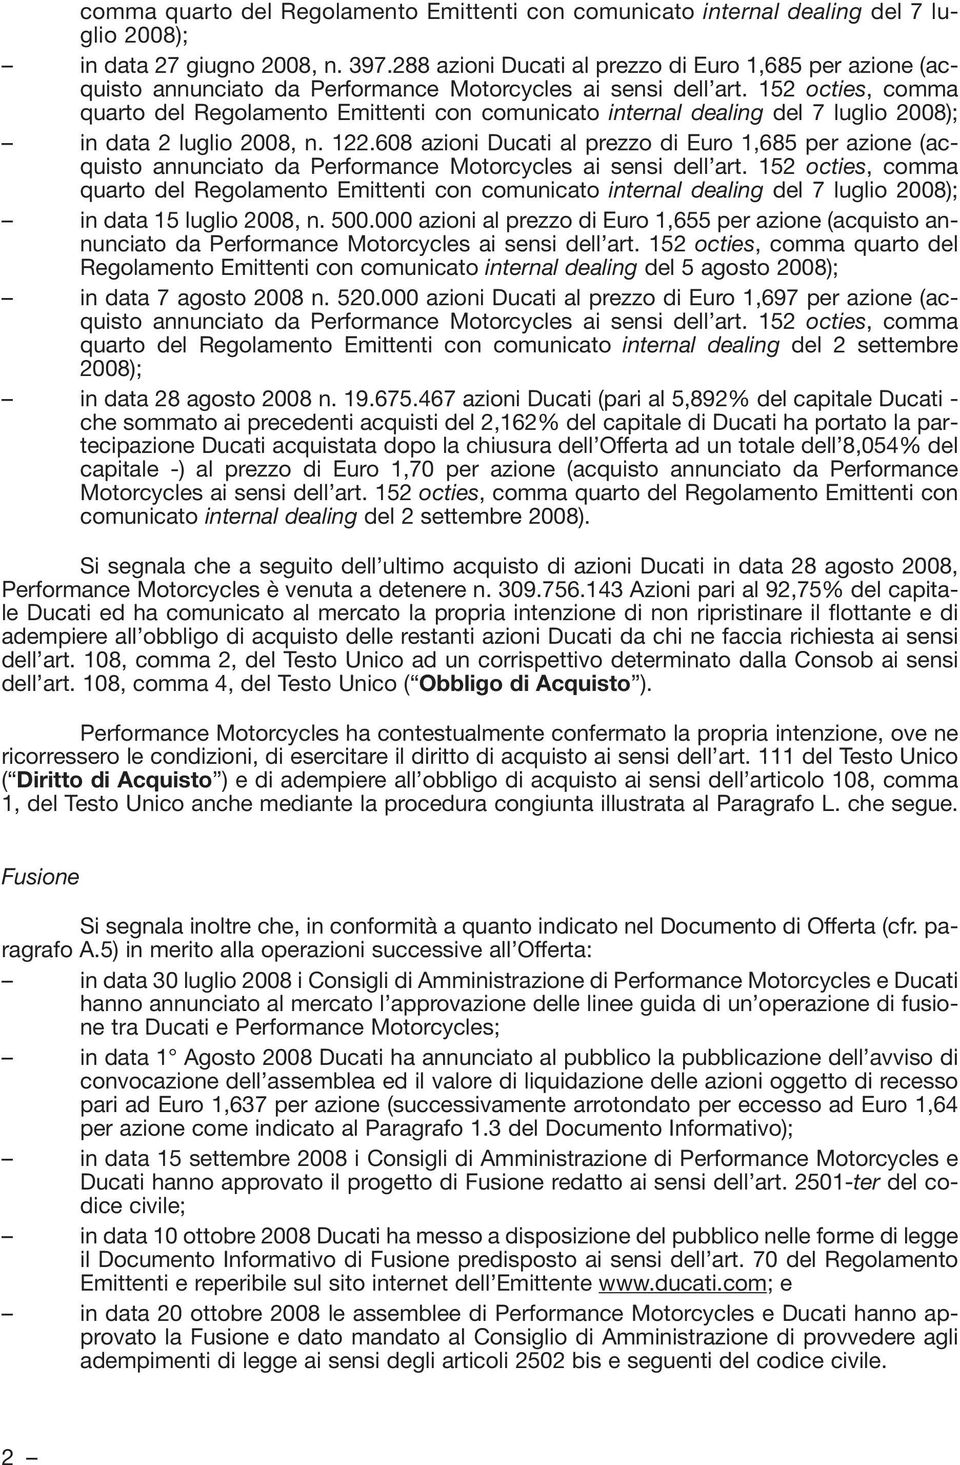 152 octies, comma quarto del Regolamento Emittenti con comunicato internal dealing del 7 luglio 2008); in data 2 luglio 2008, n. 122.